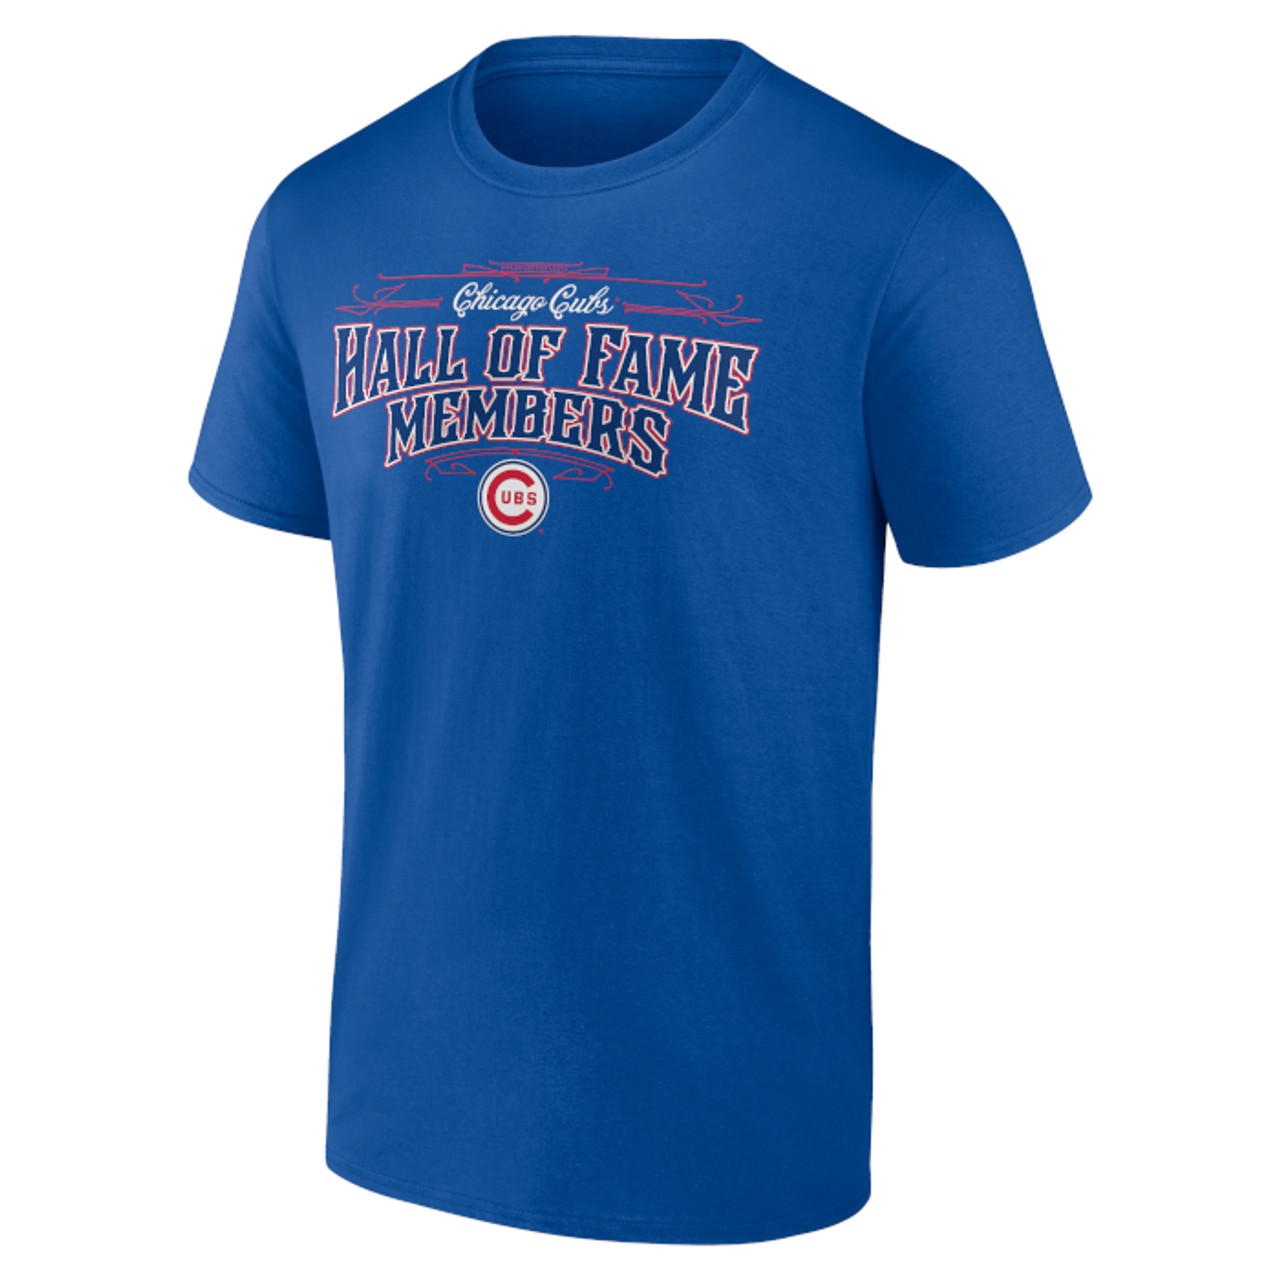 Men’s Chicago Cubs Royal Team Hall of Famer Roster T-Shirt